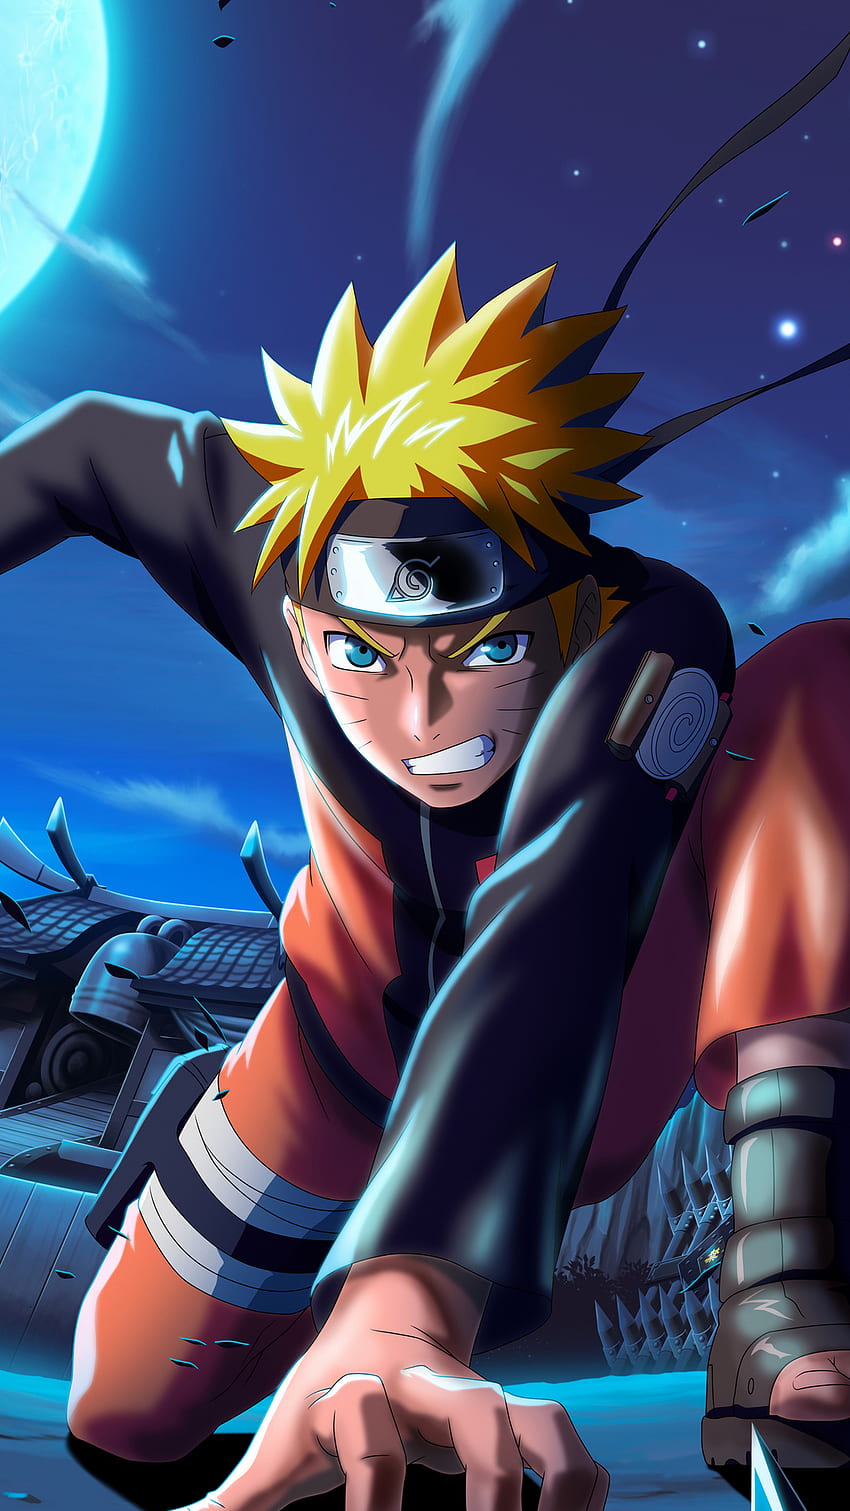 Naruto x Boruto Ninja Voltage là trò chơi mobile hoành tráng dựa trên các nhân vật quen thuộc trong cả Naruto và Boruto. Chơi game, bạn sẽ hợp tác với các ninja yêu thích của mình để đánh bại kẻ thù và bảo vệ ngôi làng. Hãy xem hình ảnh liên quan để khám phá thế giới ninja đầy màu sắc ngay bây giờ!